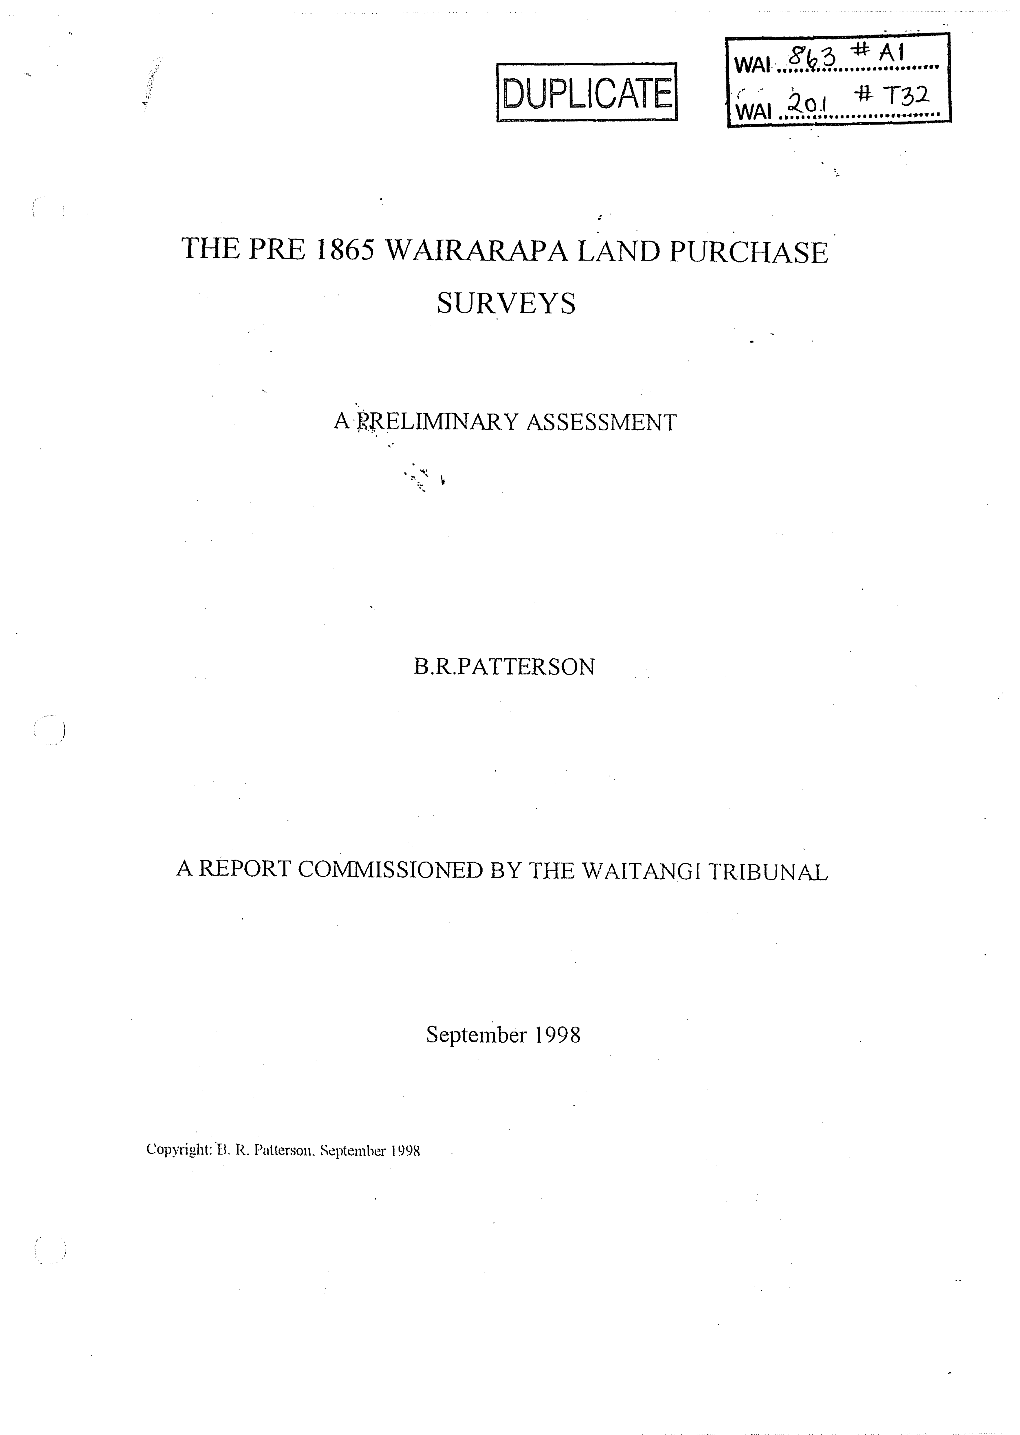 The Pre 1865 Wairarapa Land Purchase Surveys